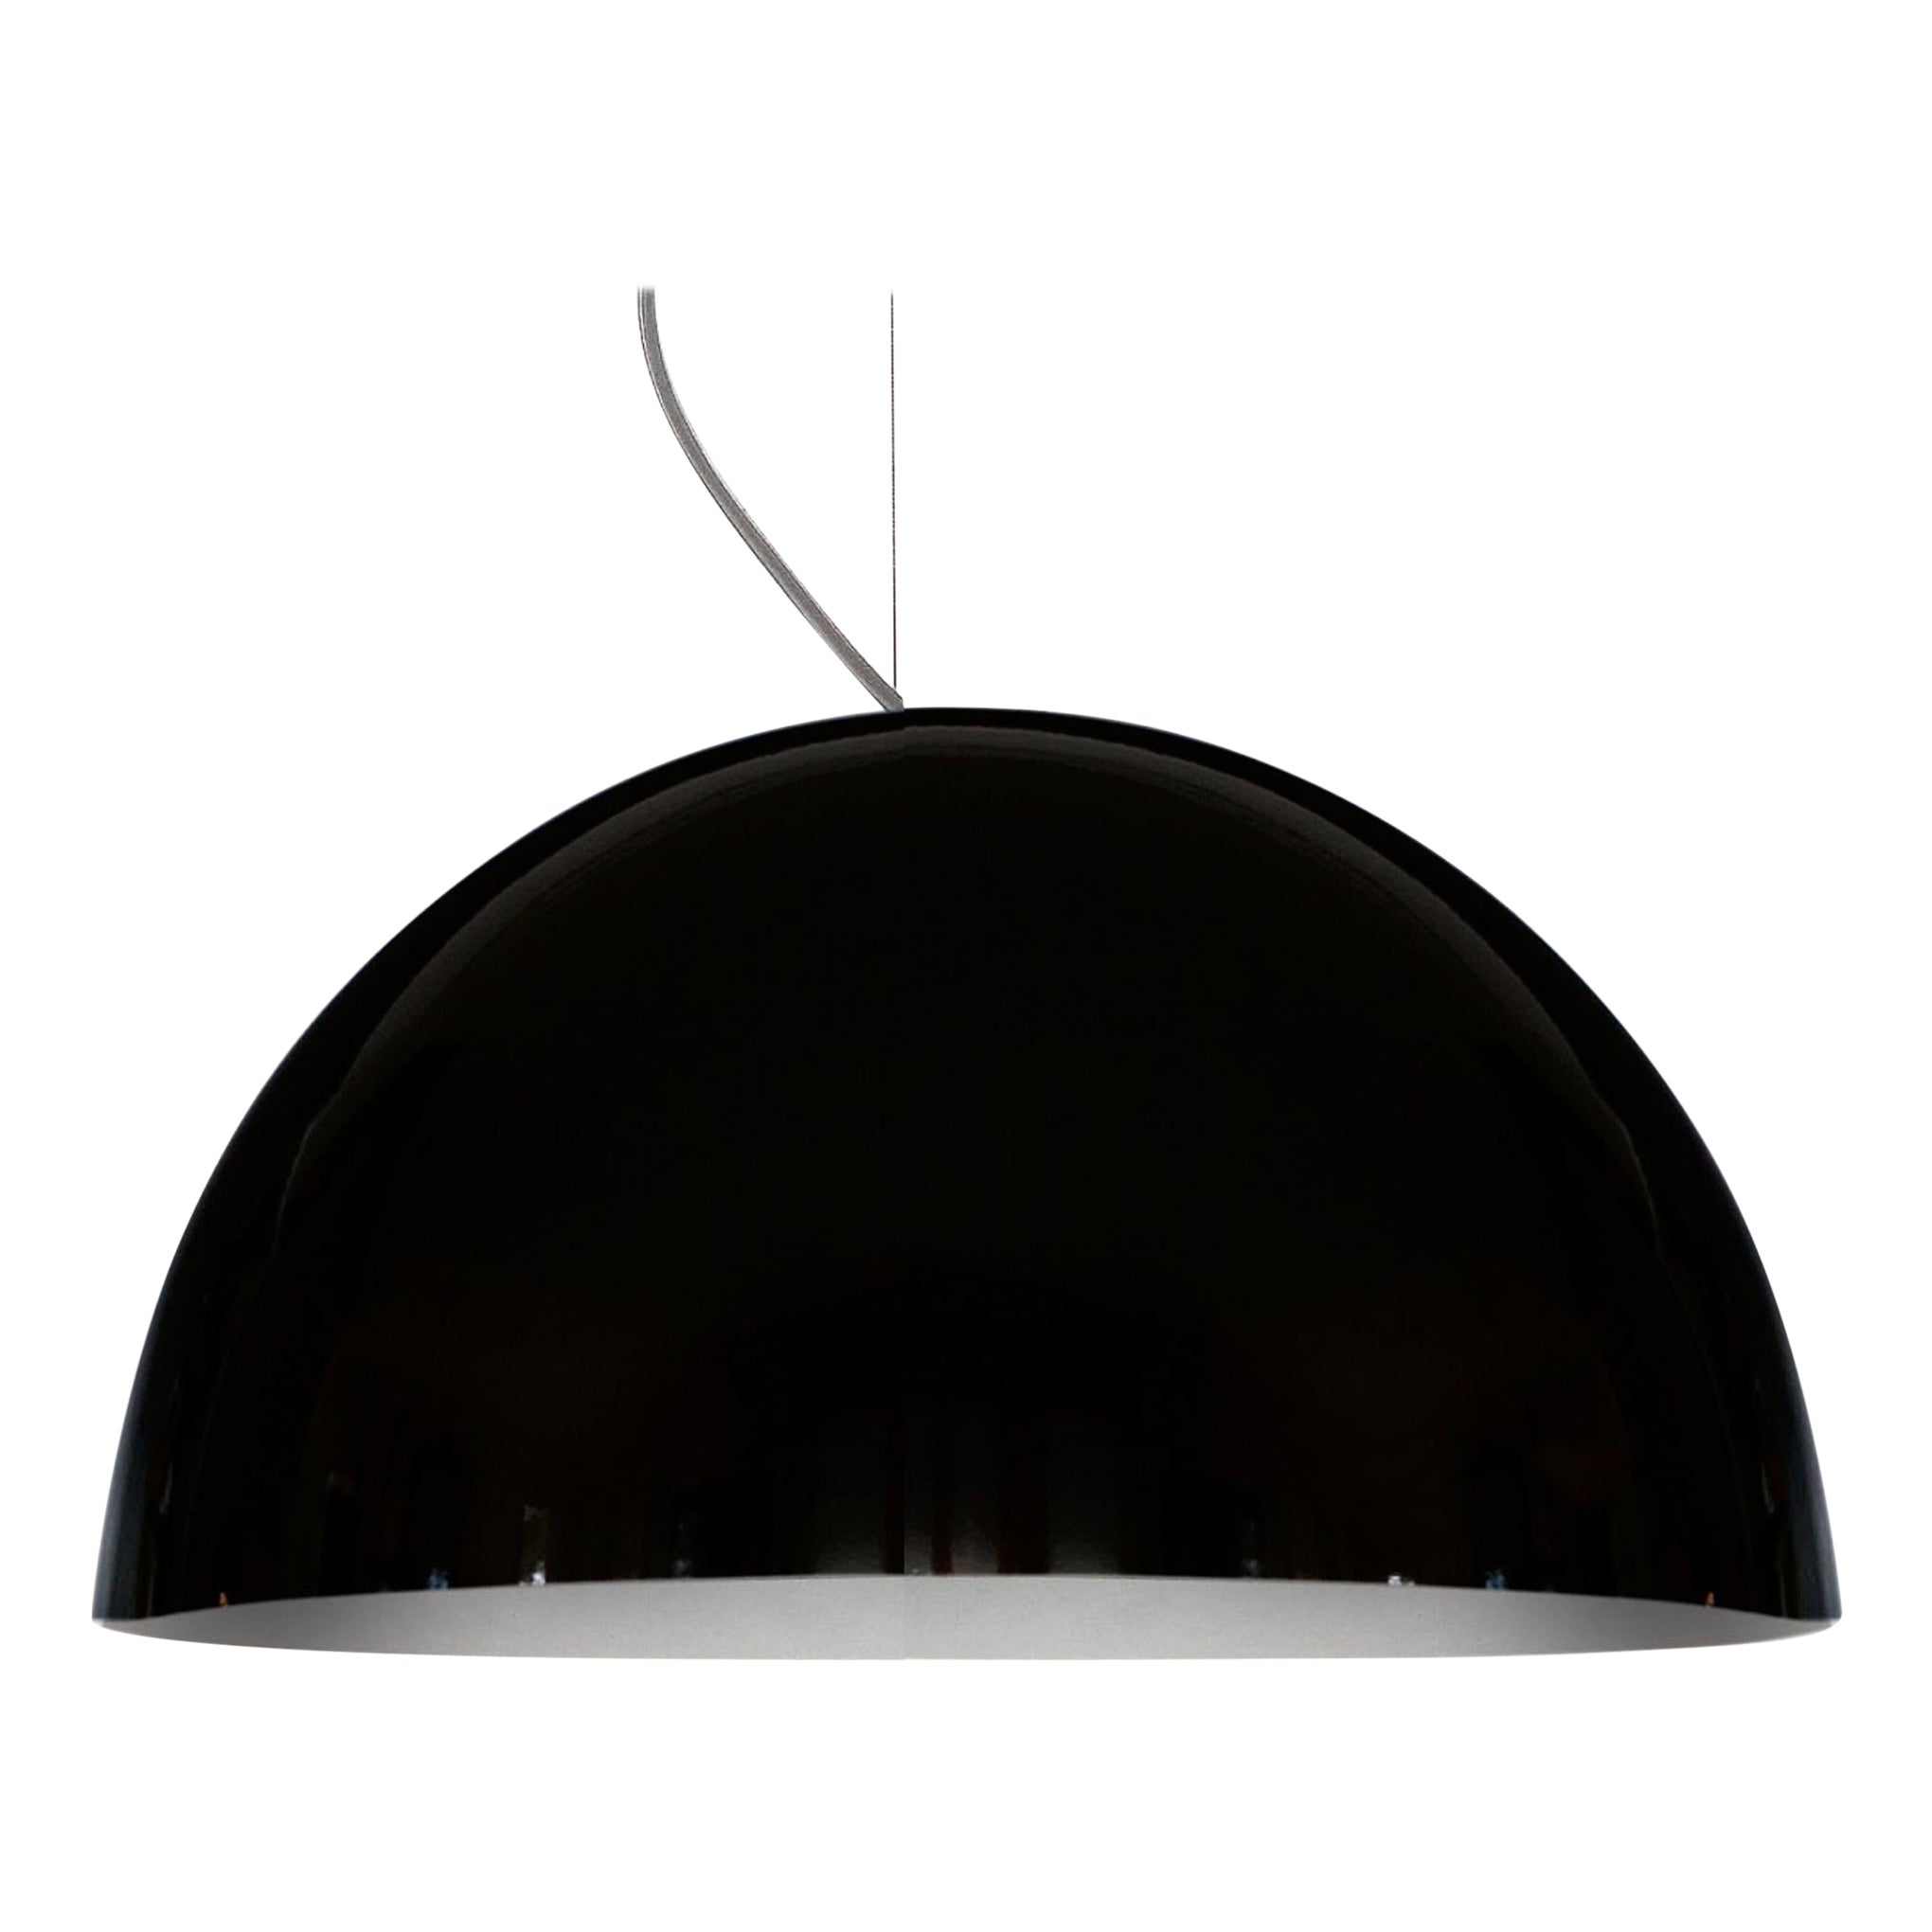 Vico Magistretti Suspension Lamp 'Sonora' 490 Black by Oluce For Sale